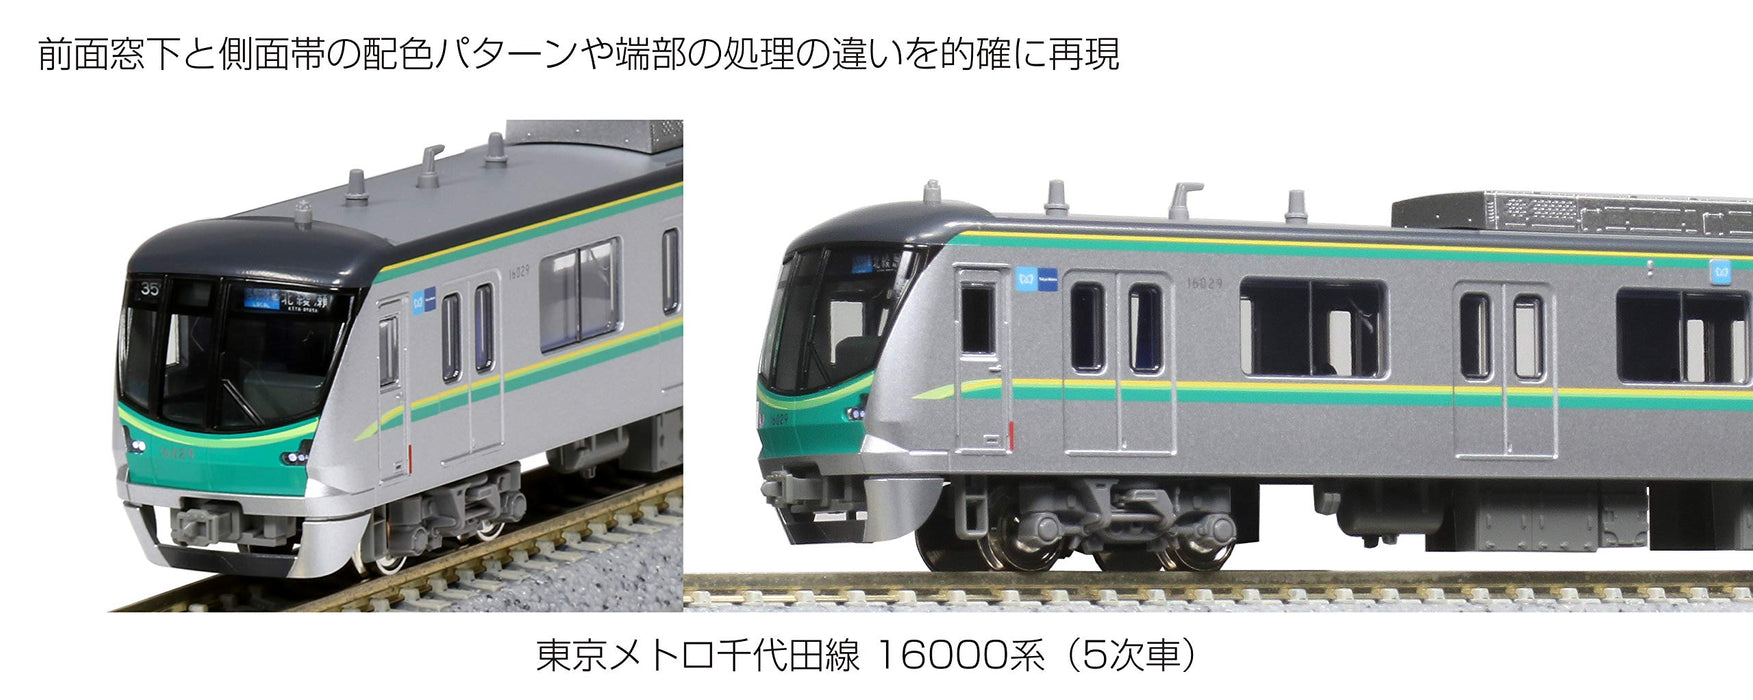 Kato N gauge 10-1605 Tokyo Metro Chiyoda Line Series 16000(5th) 6-Car Basic Set_3